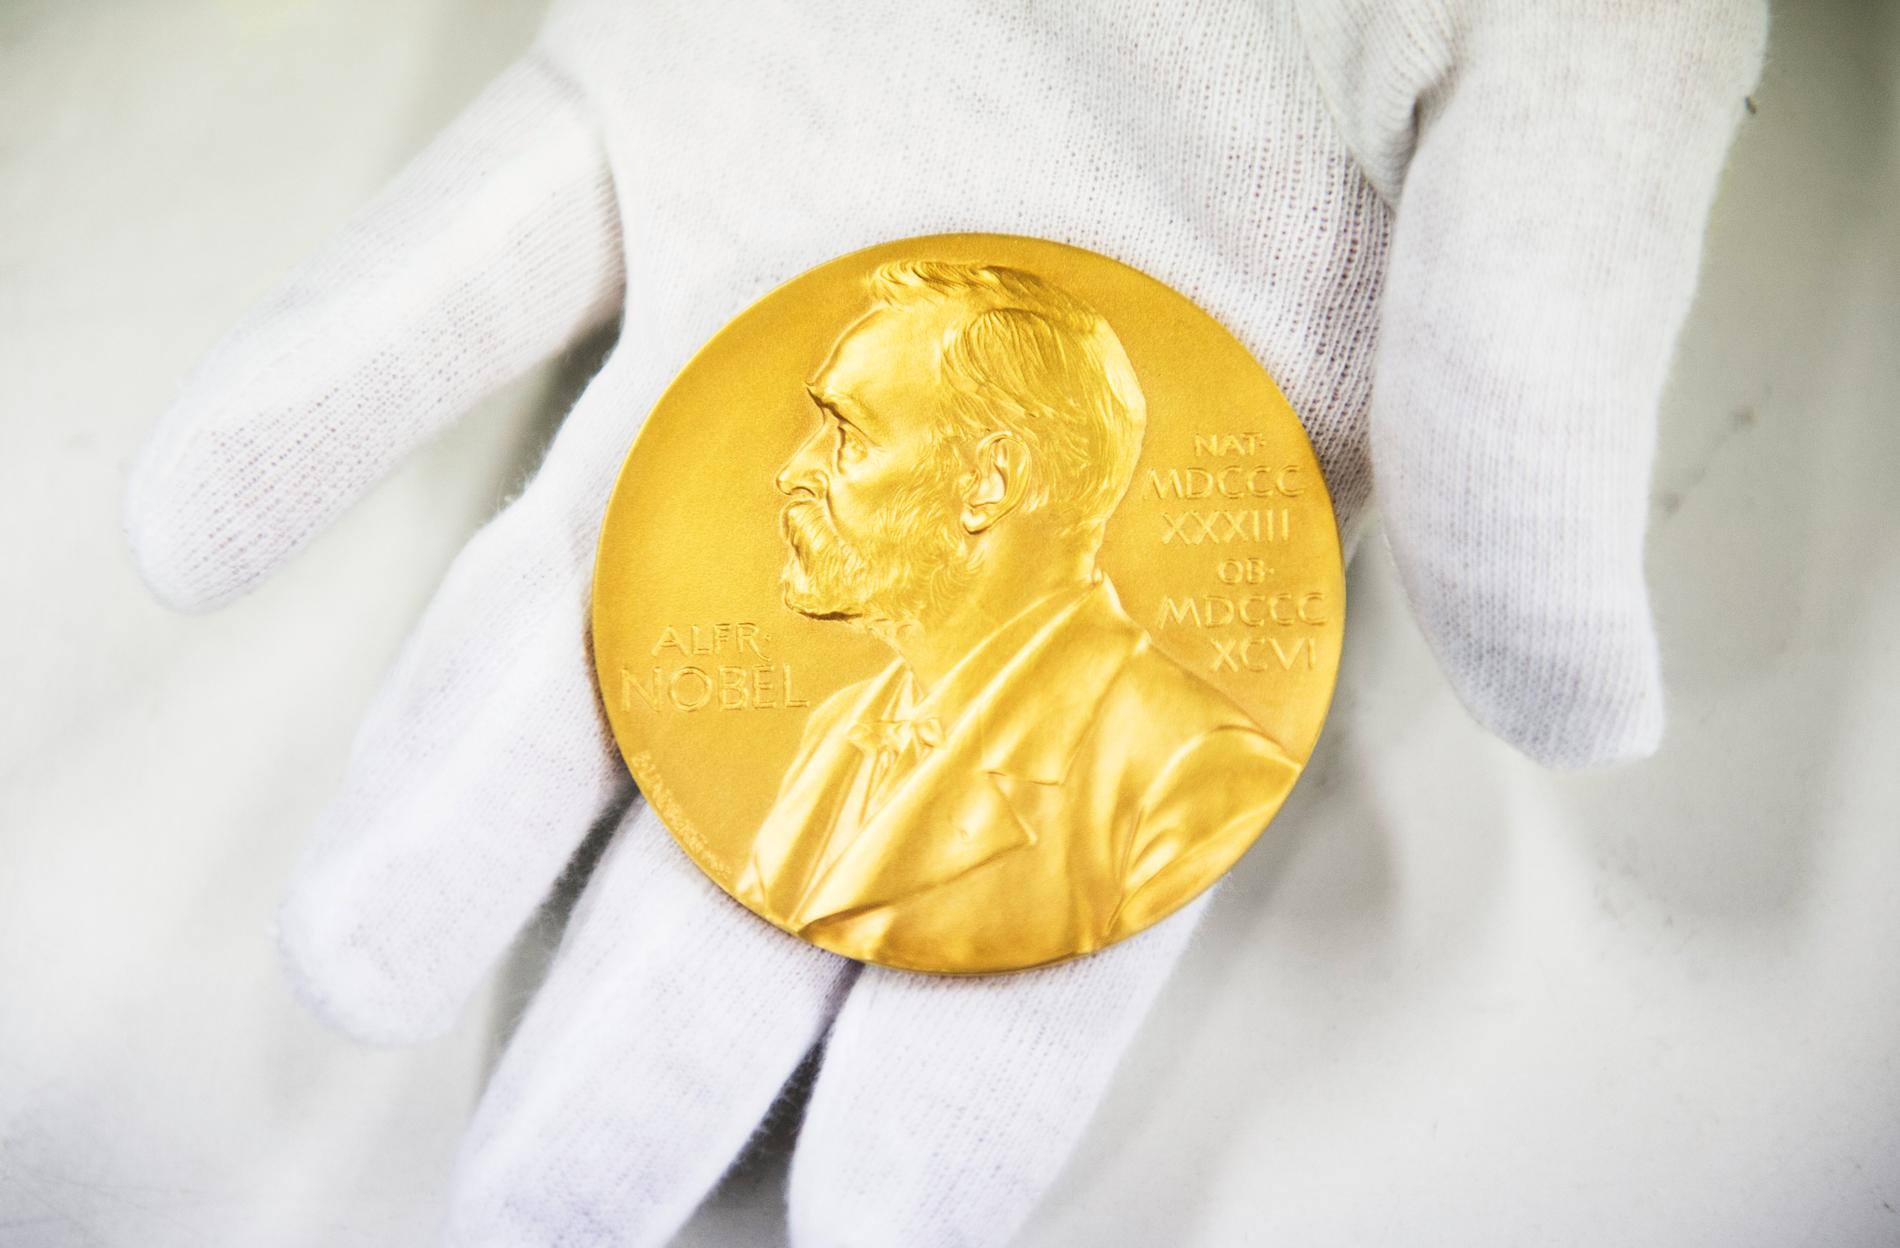 Nästa vecka tillkännages vilka som får årets Nobelpris. Förutom en diger prissumma får varje pristagare också en medalj i massivt 18 karats guld. Arkivbild.